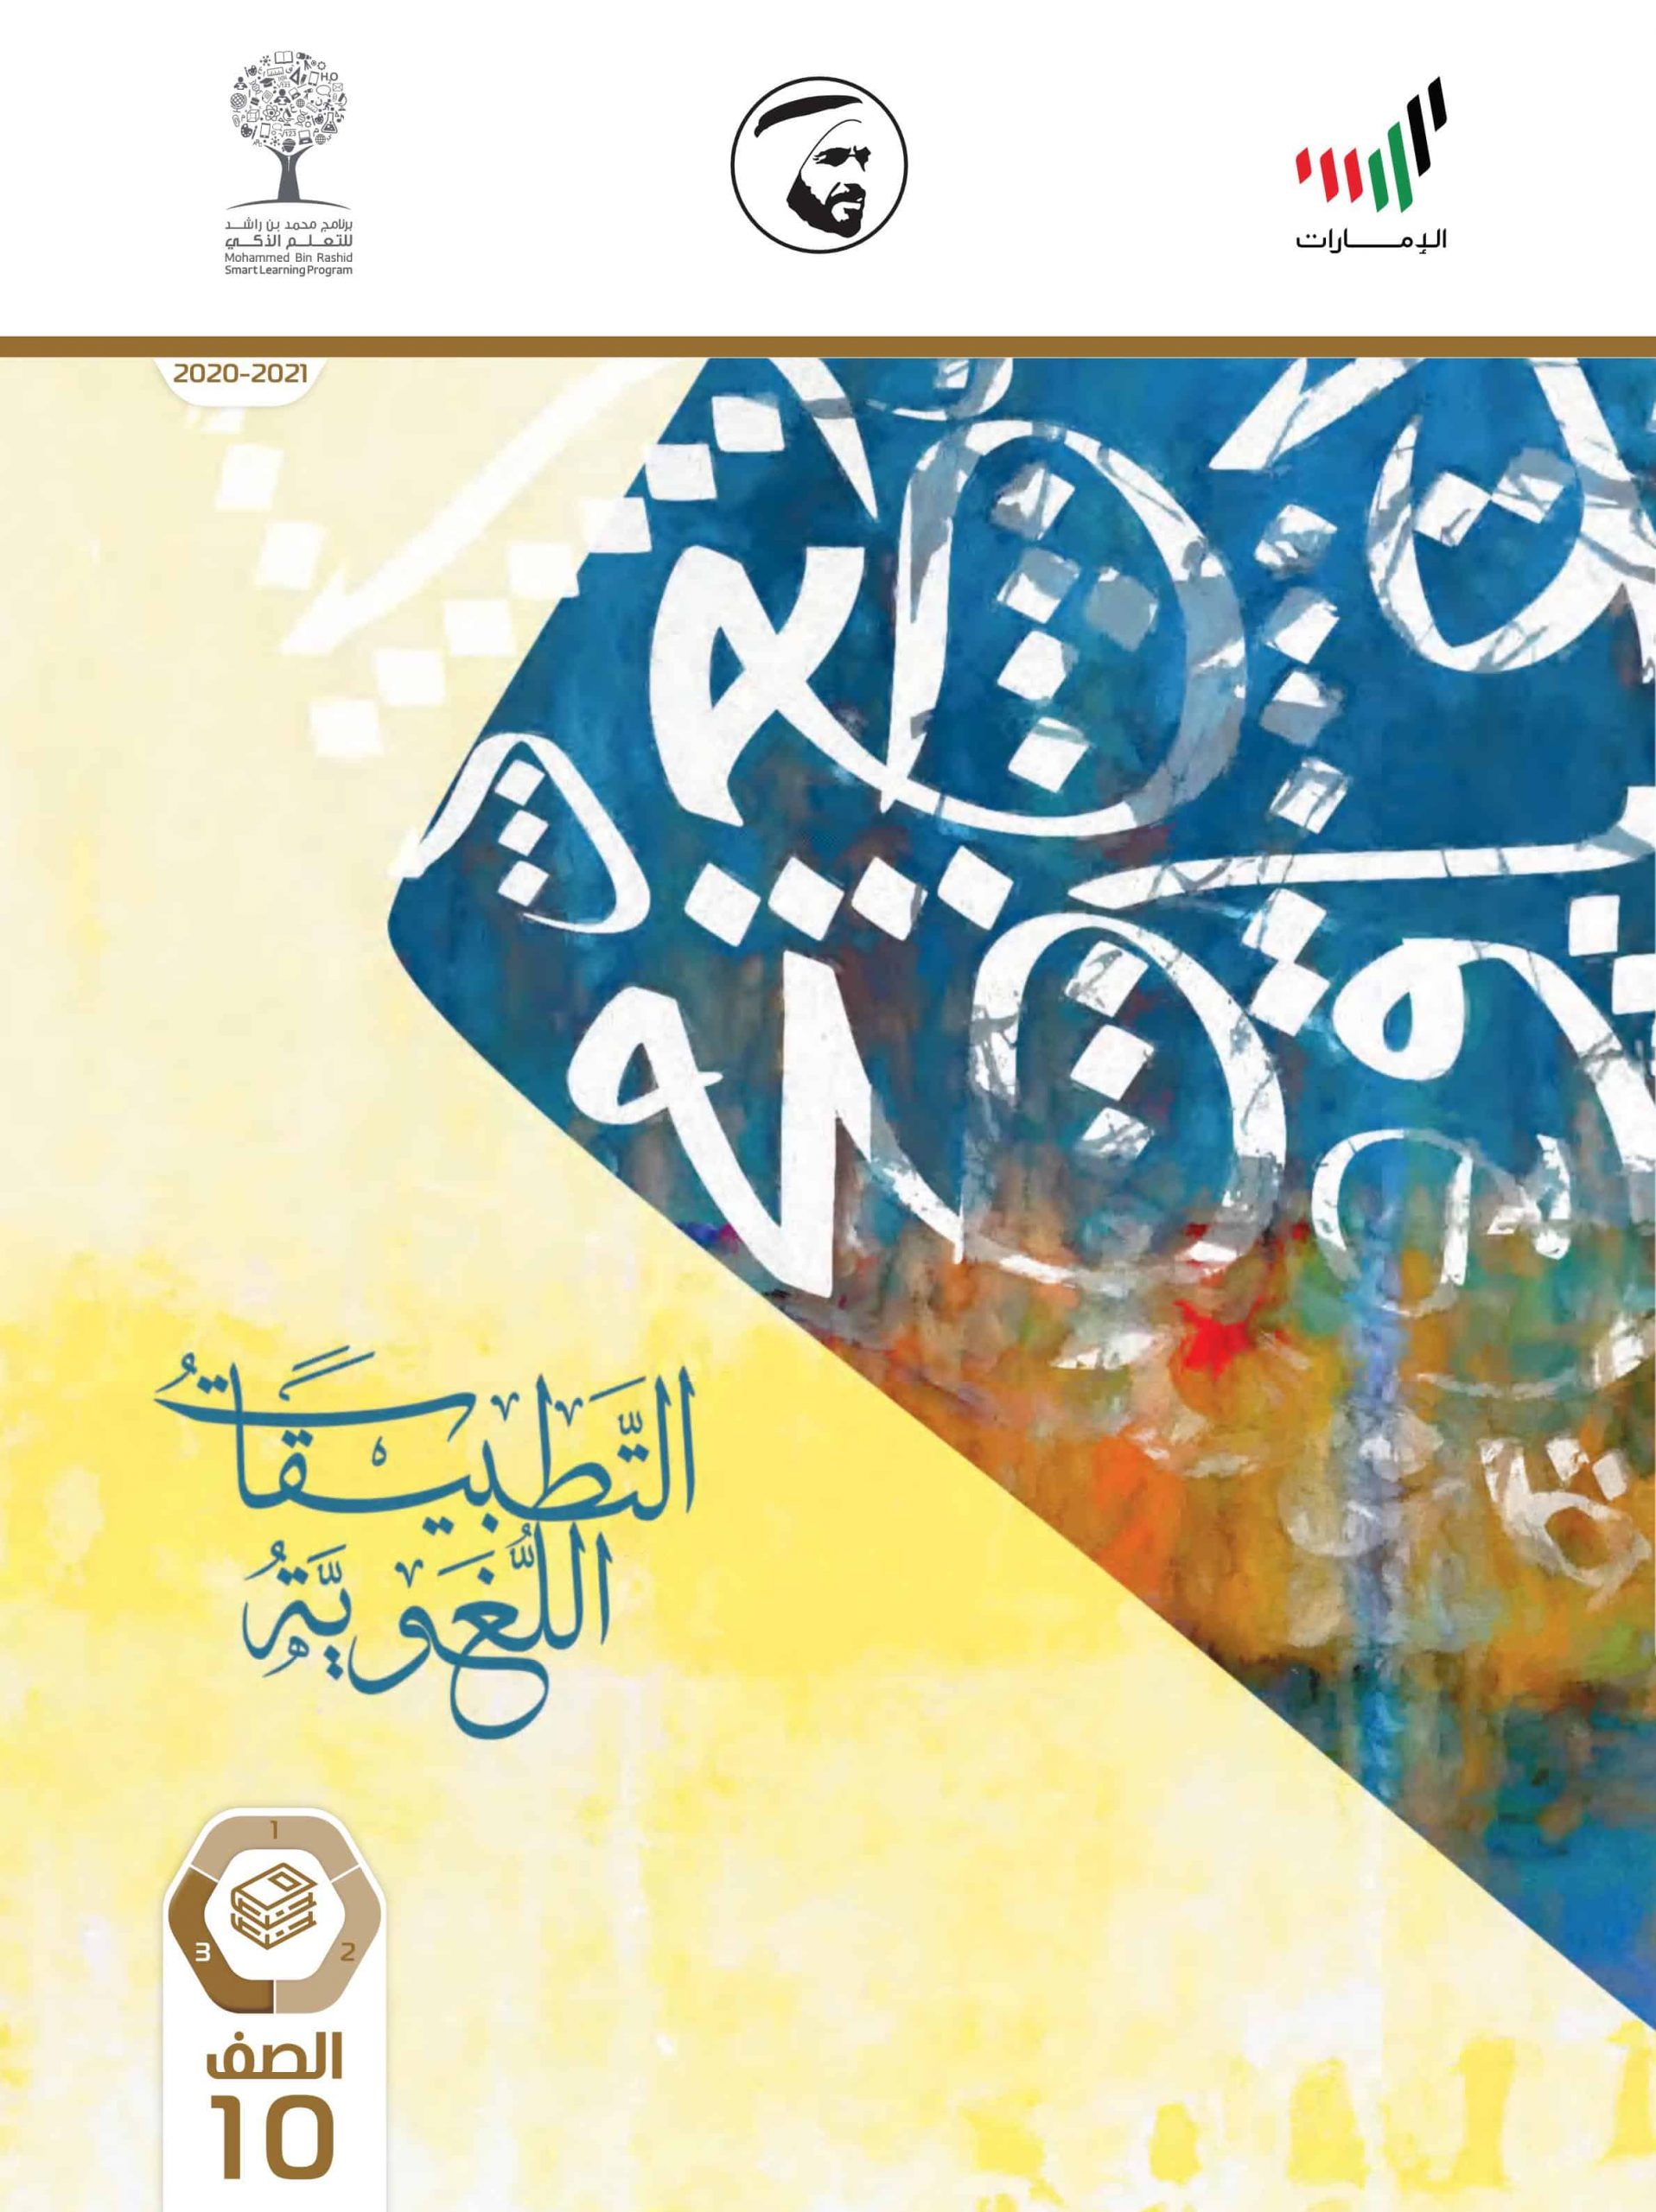 كتاب الطالب الفصل الدراسي الثالث 2020-2021 الصف العاشر مادة اللغة العربية 